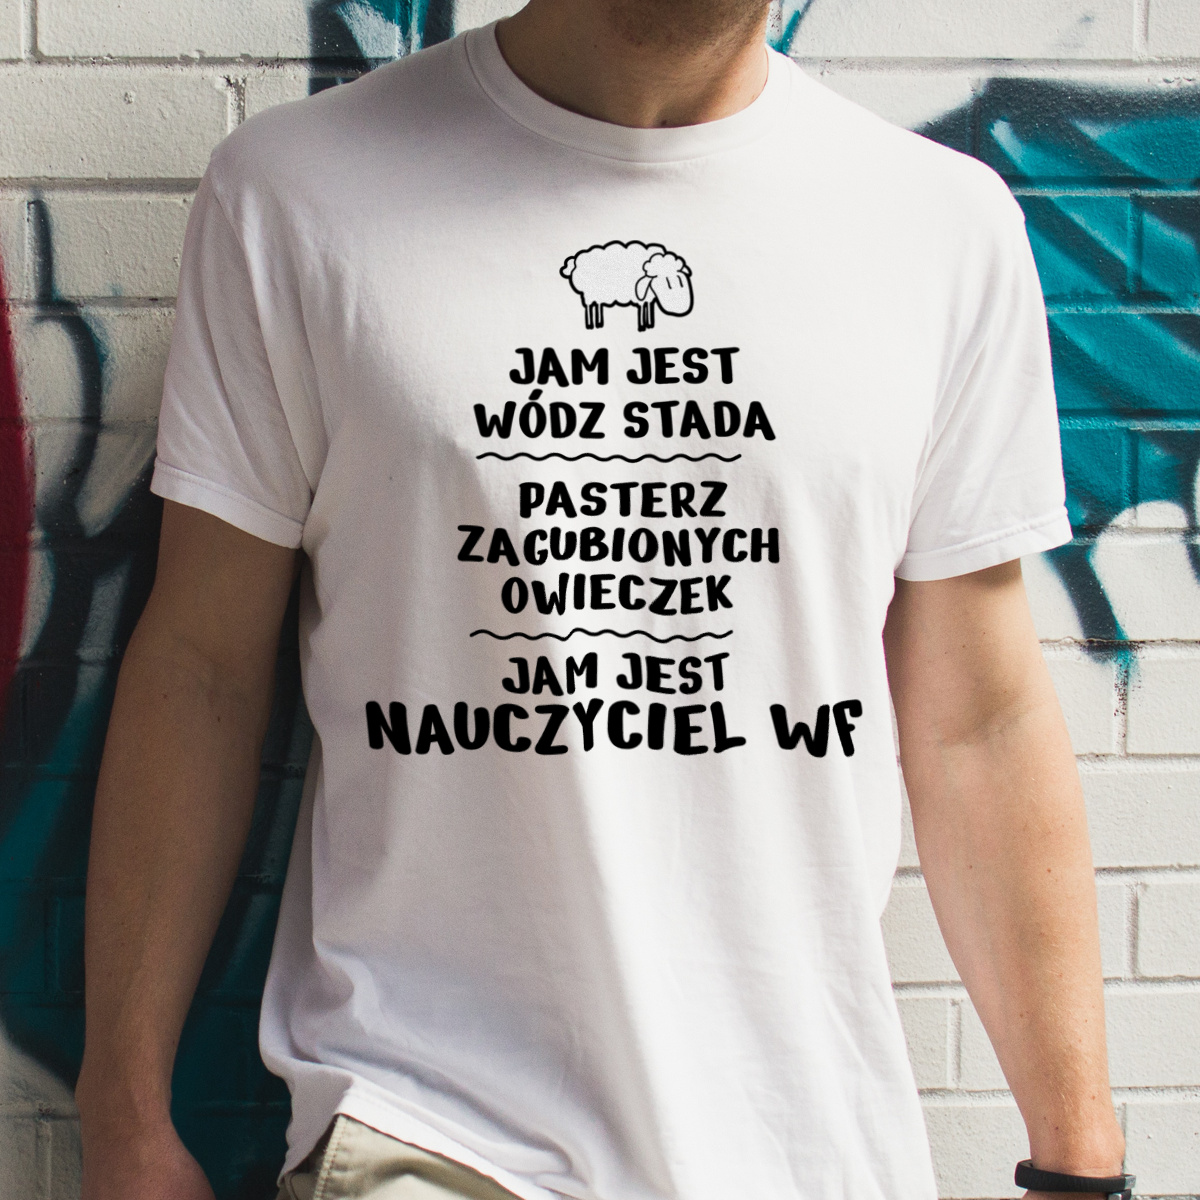 Jam Jest Nauczyciel Wf Wódz Stada - Męska Koszulka Biała